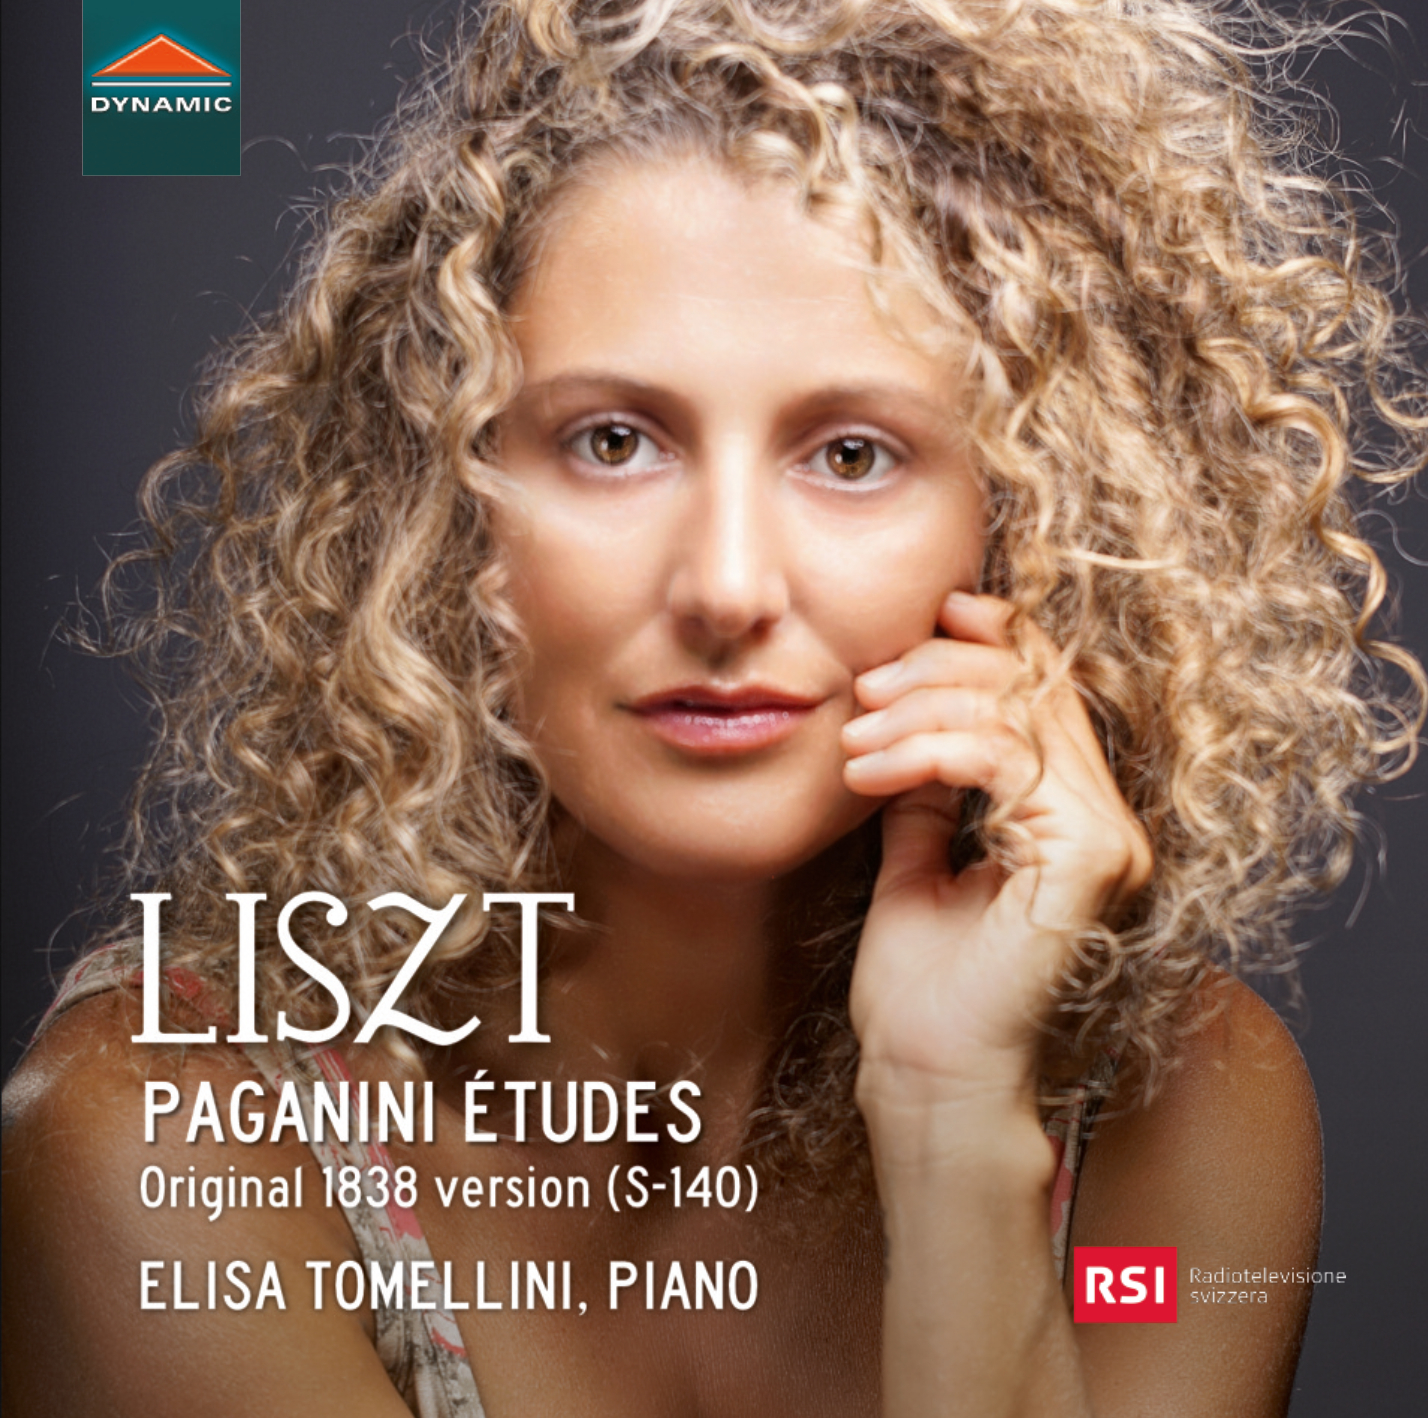 Liszt Paganini Etudes